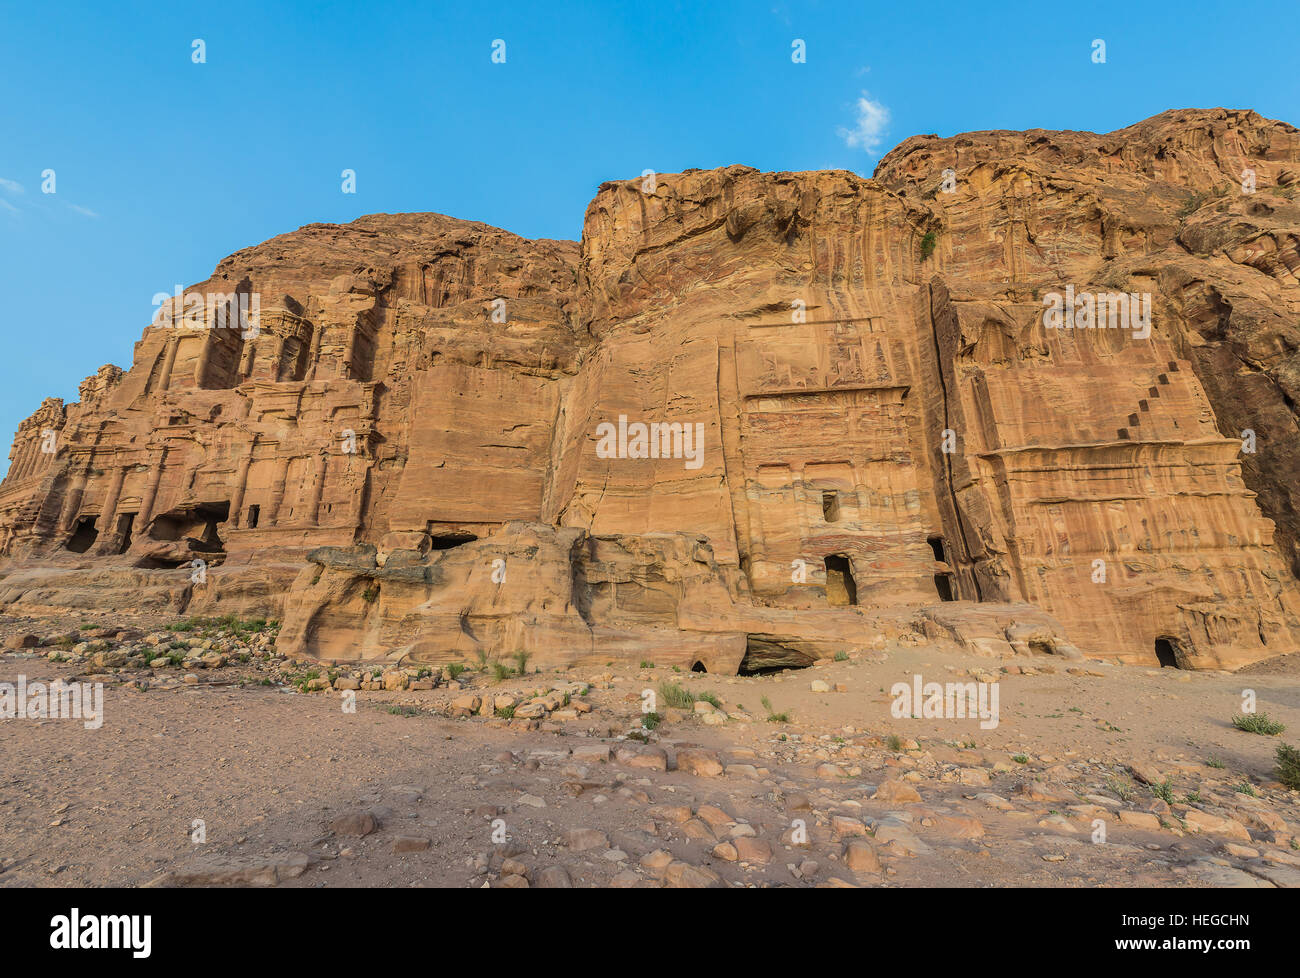 Tumbas reales en Nabateo Petra Jordania oriente medio Foto de stock